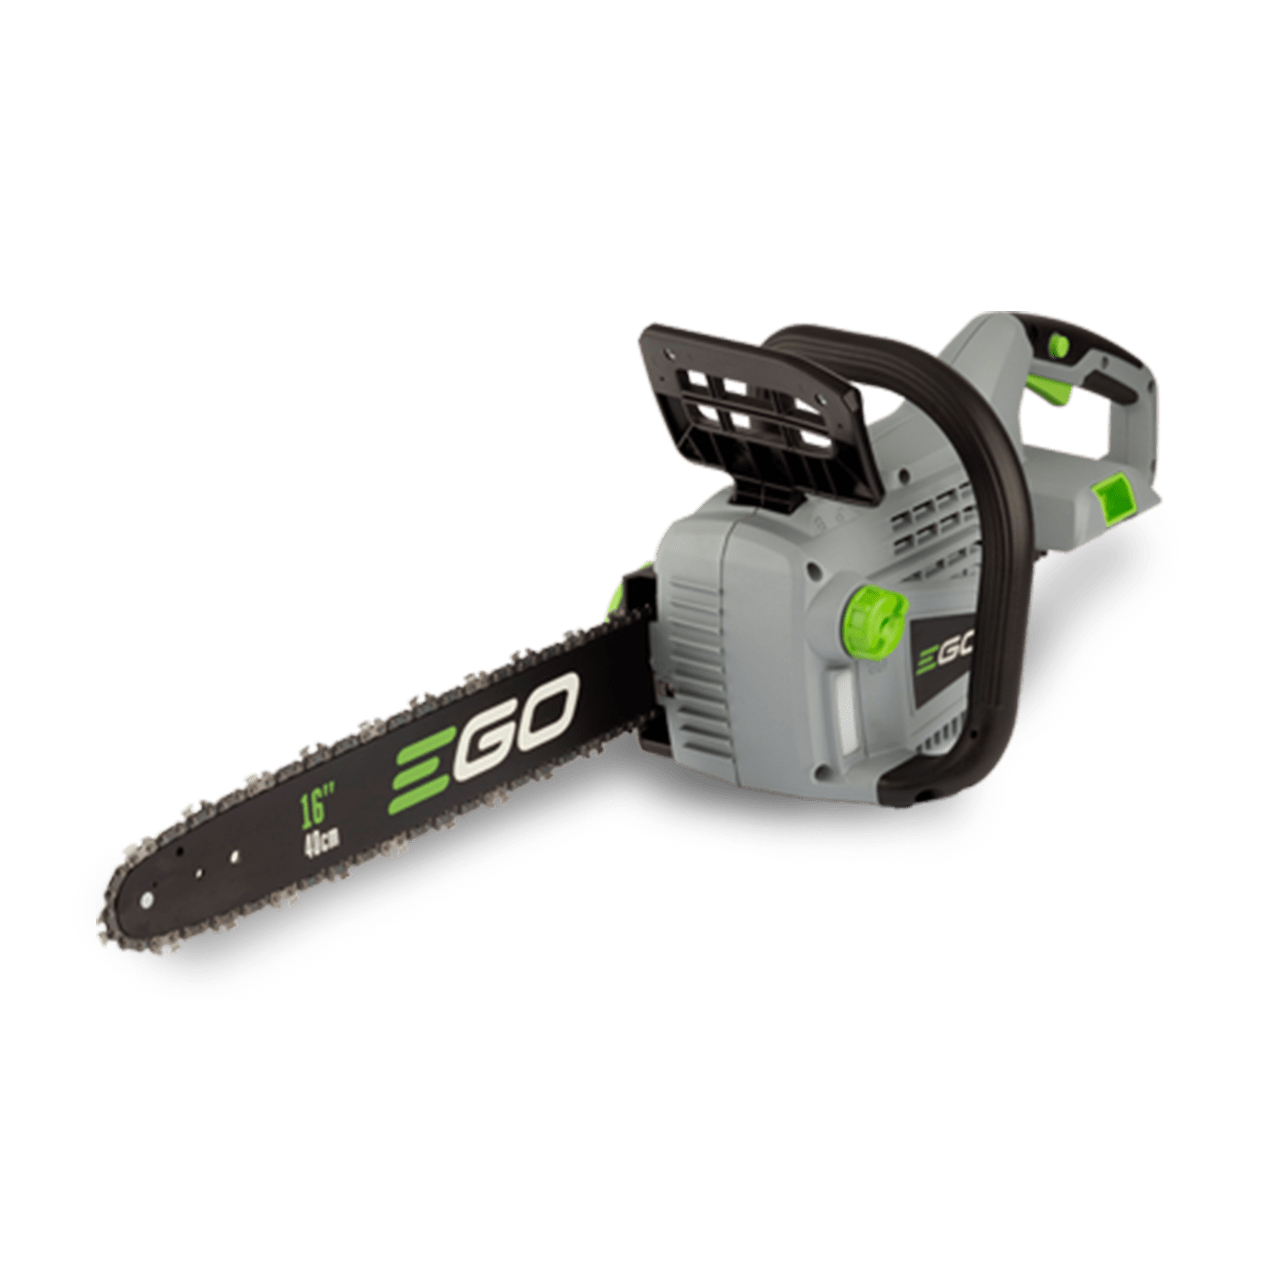 ego-cs1600e-40cm-chainsaw-bare-tool